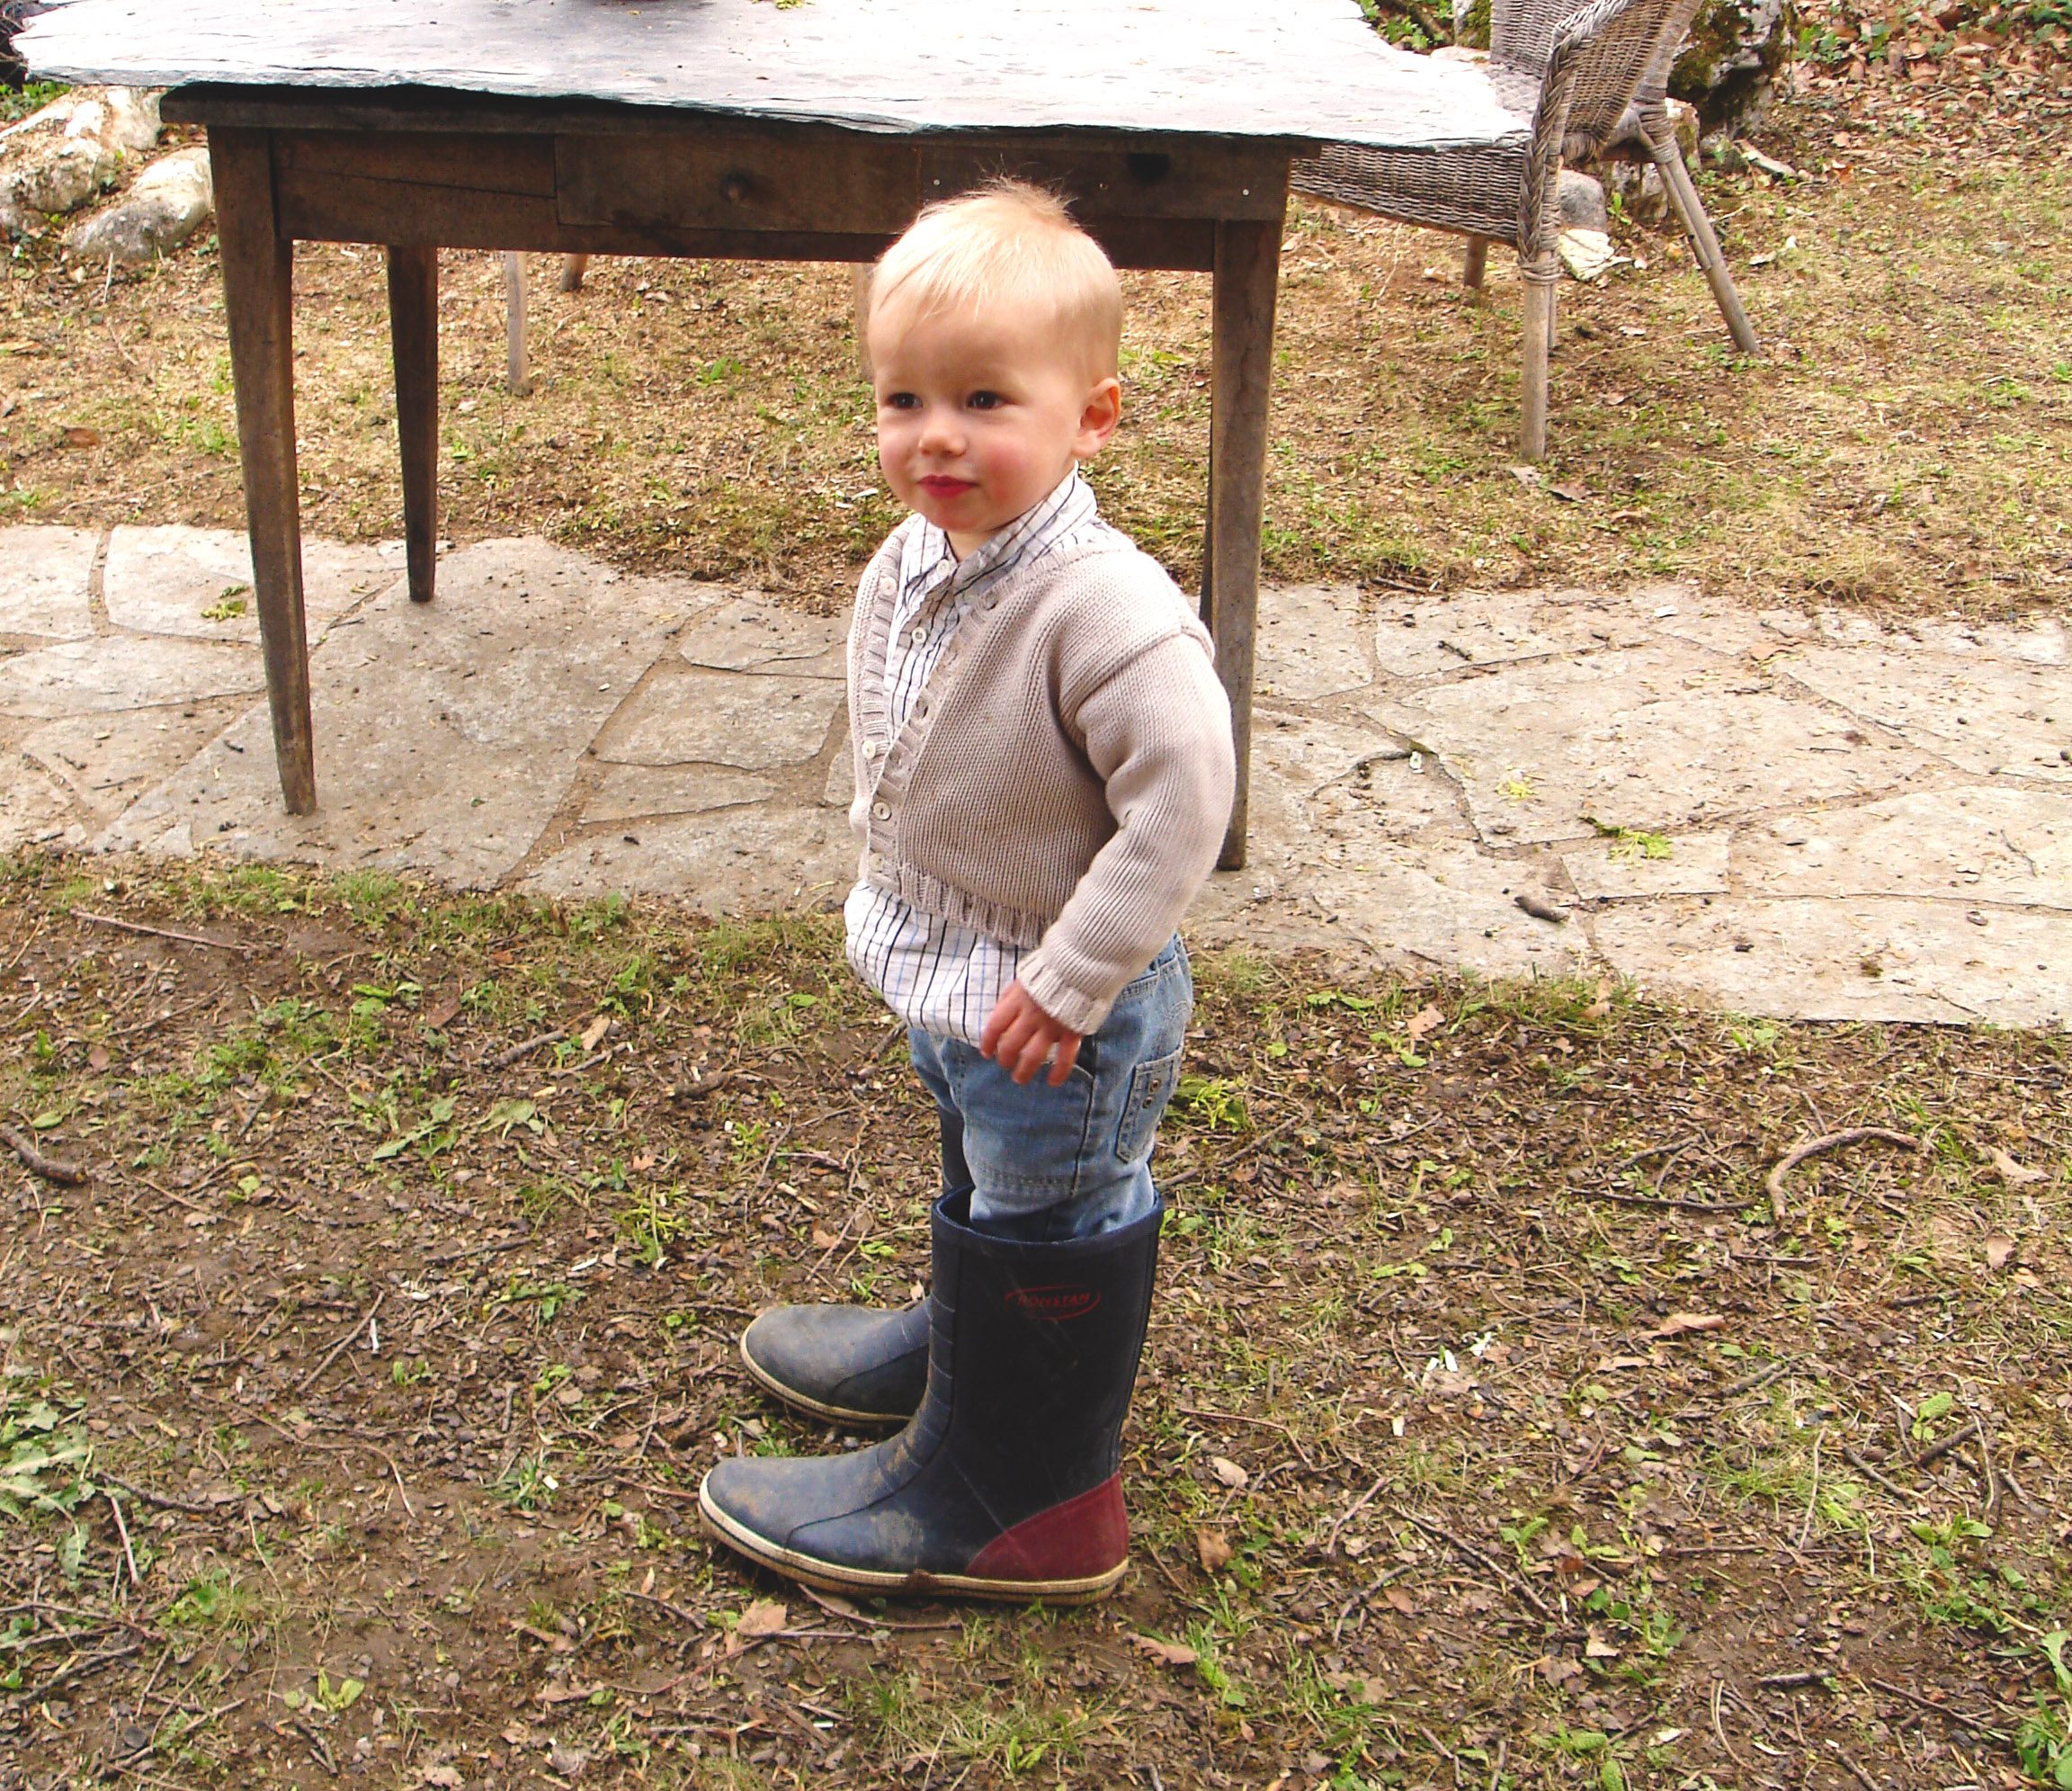 Chaussures Premier Pas Bébé Garçon Fille Intérieur Chaussures En